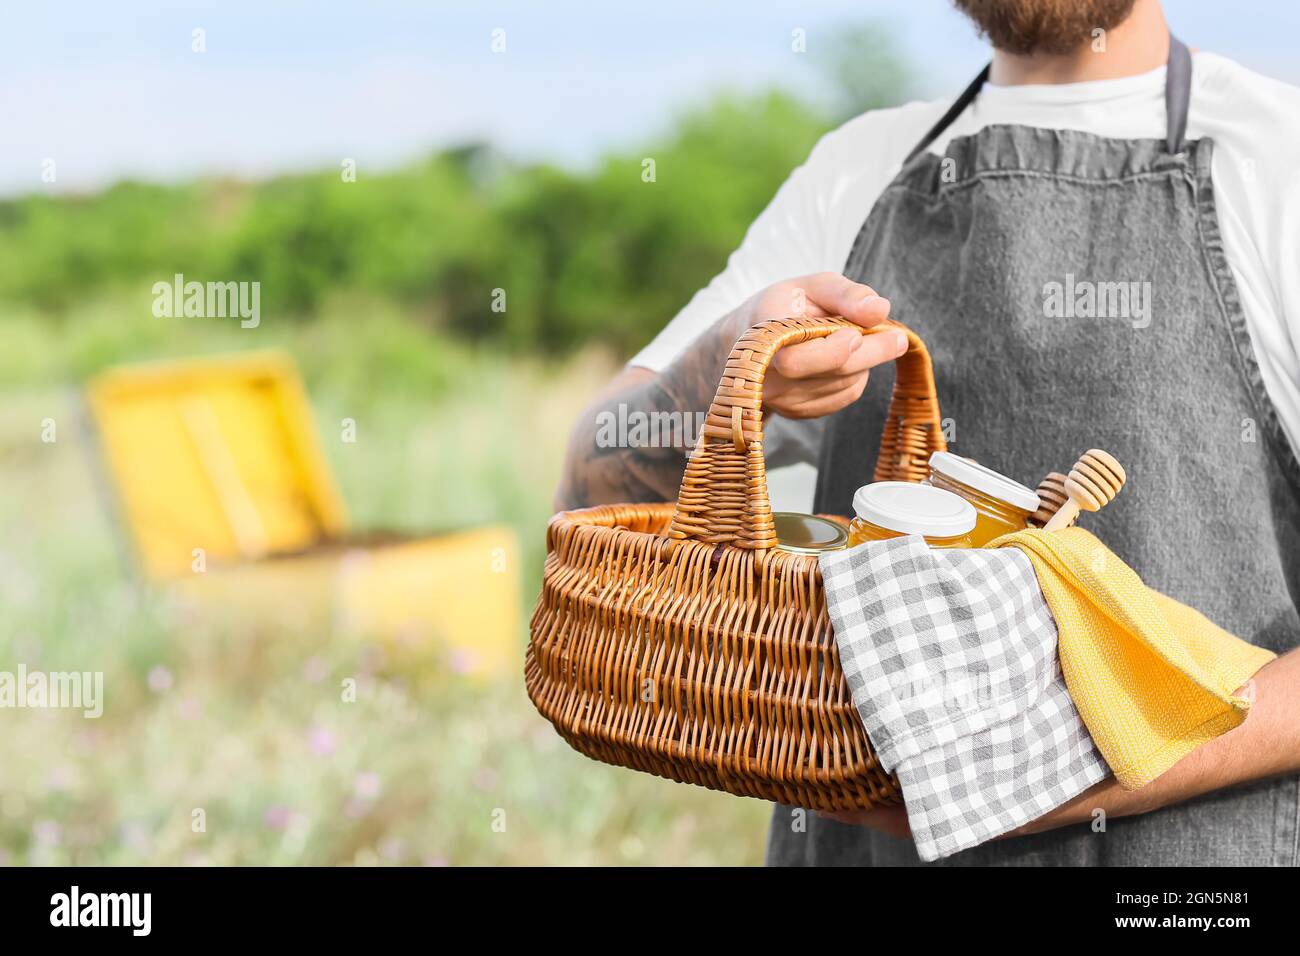 Imker mit Honig im Korb bei der Imkerei Stockfoto